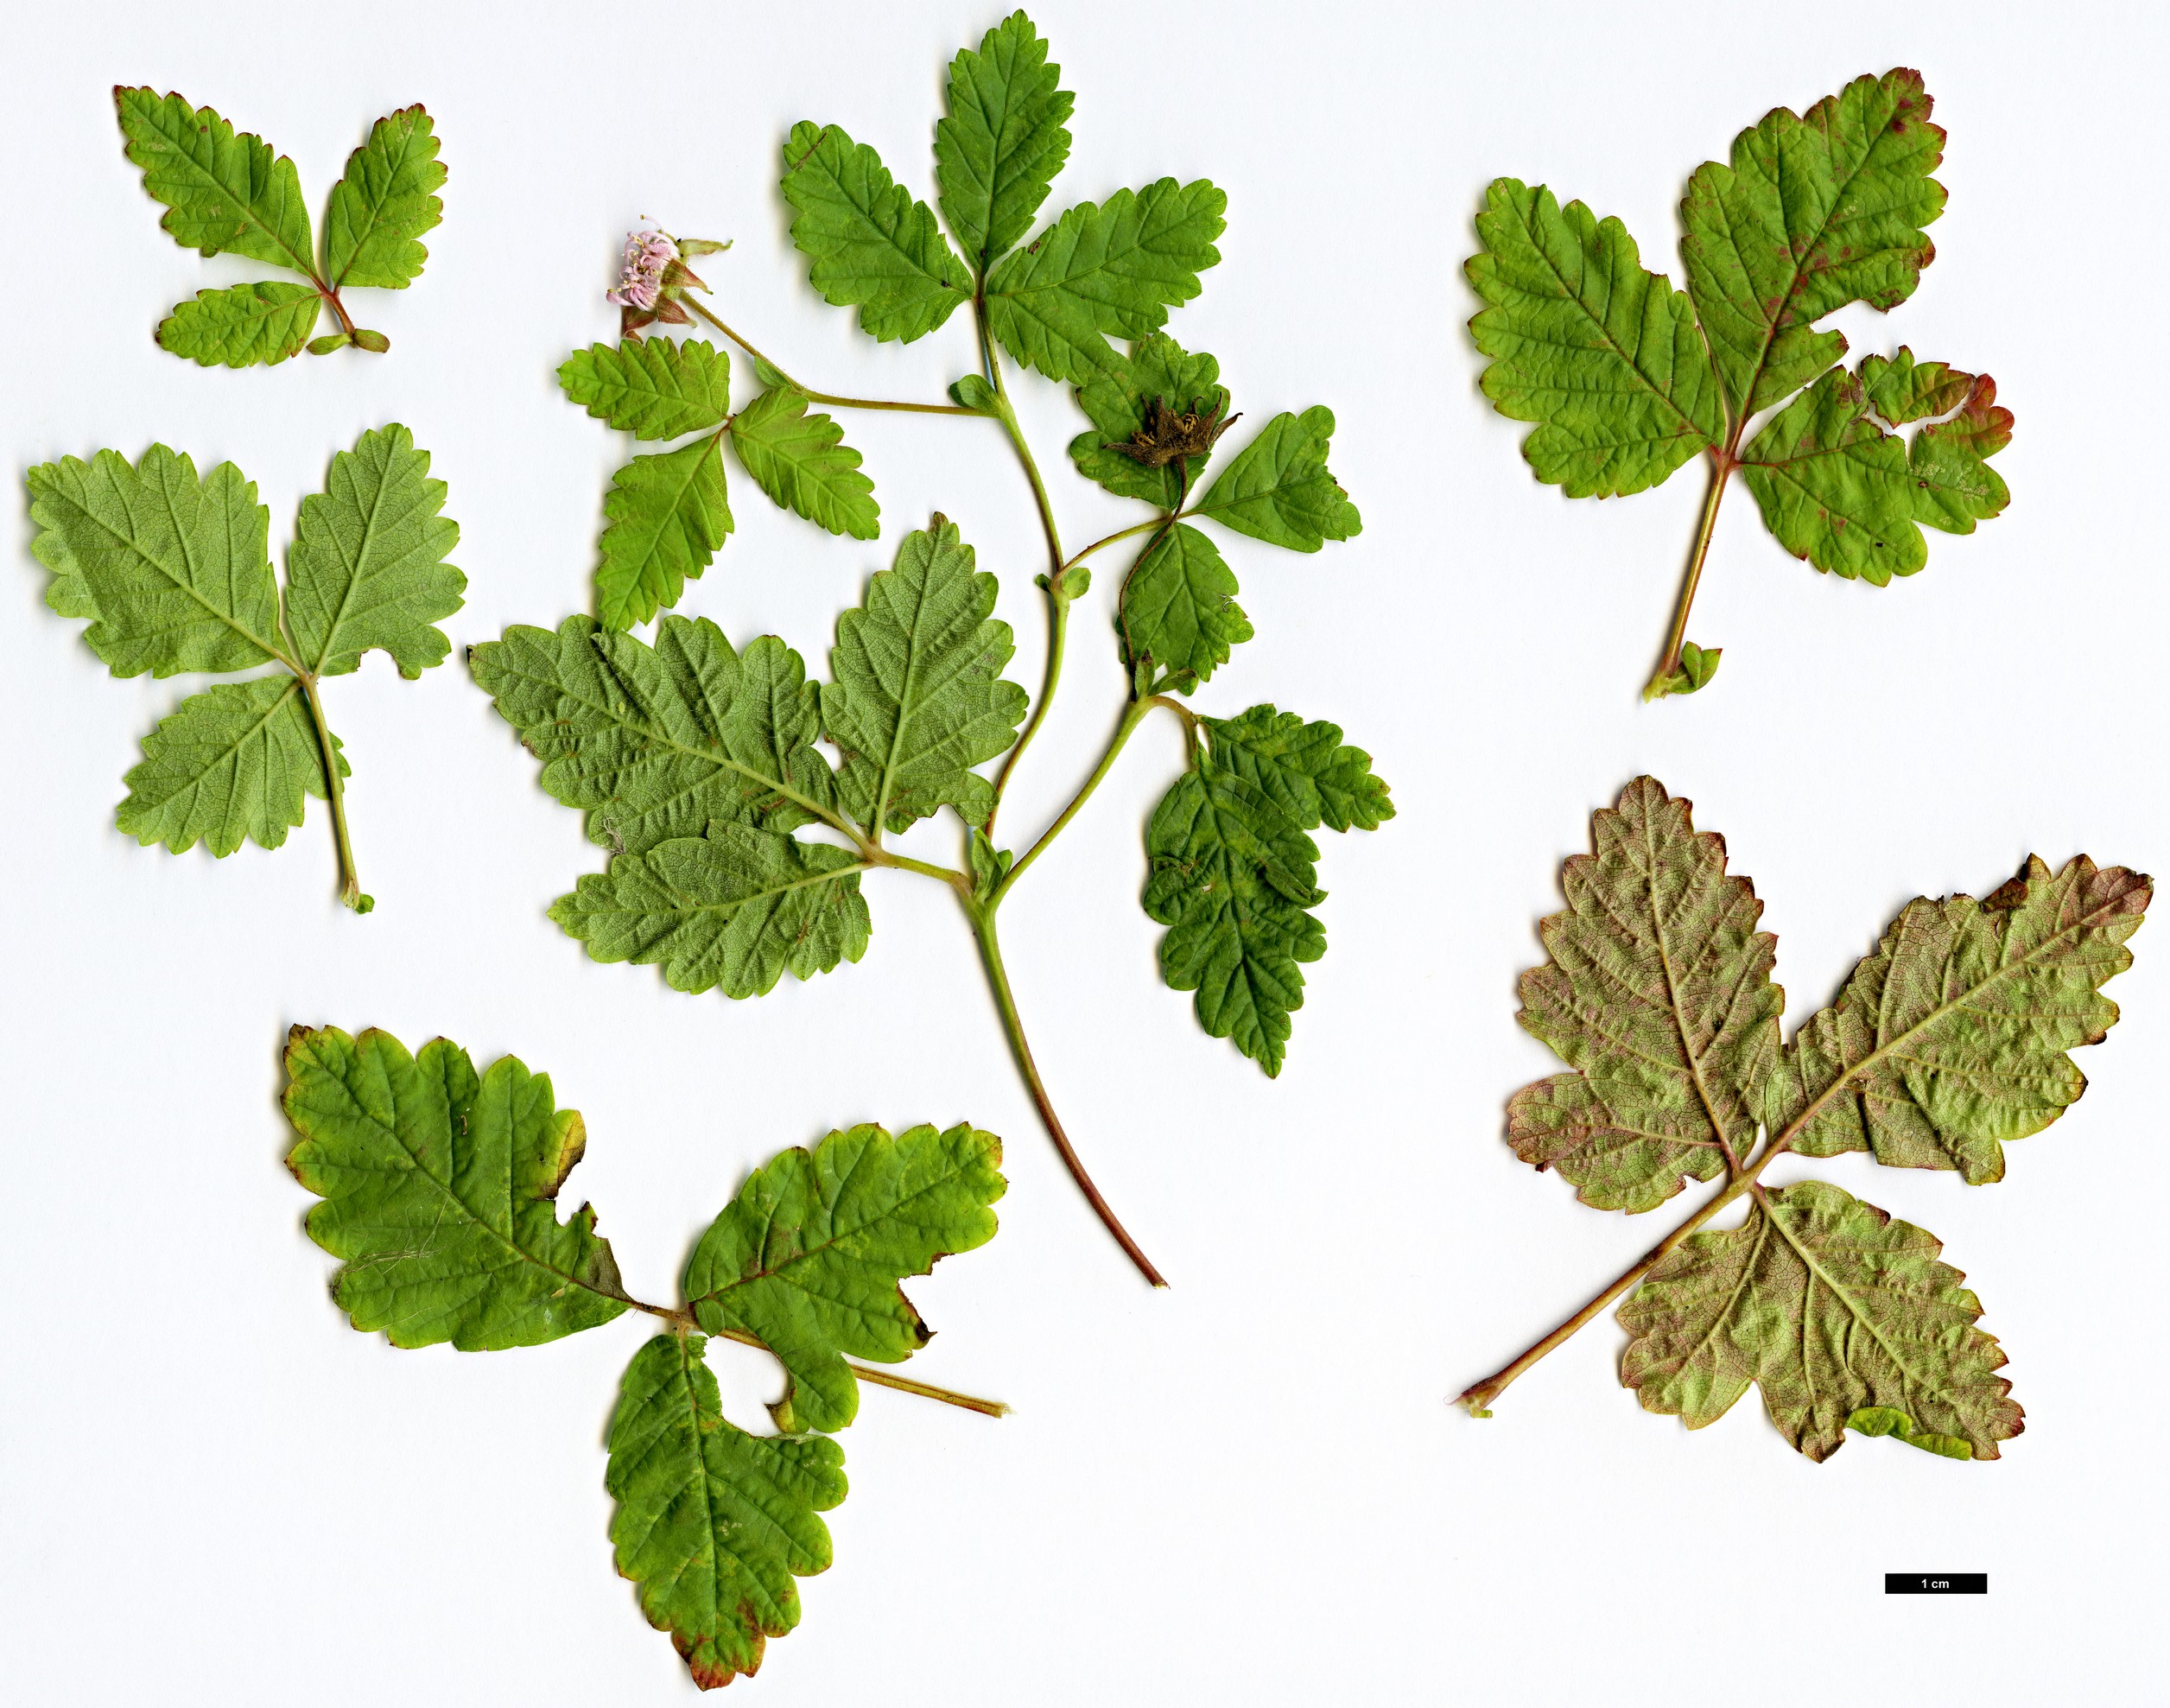 High resolution image: Family: Rosaceae - Genus: Rubus - Taxon: arcticus